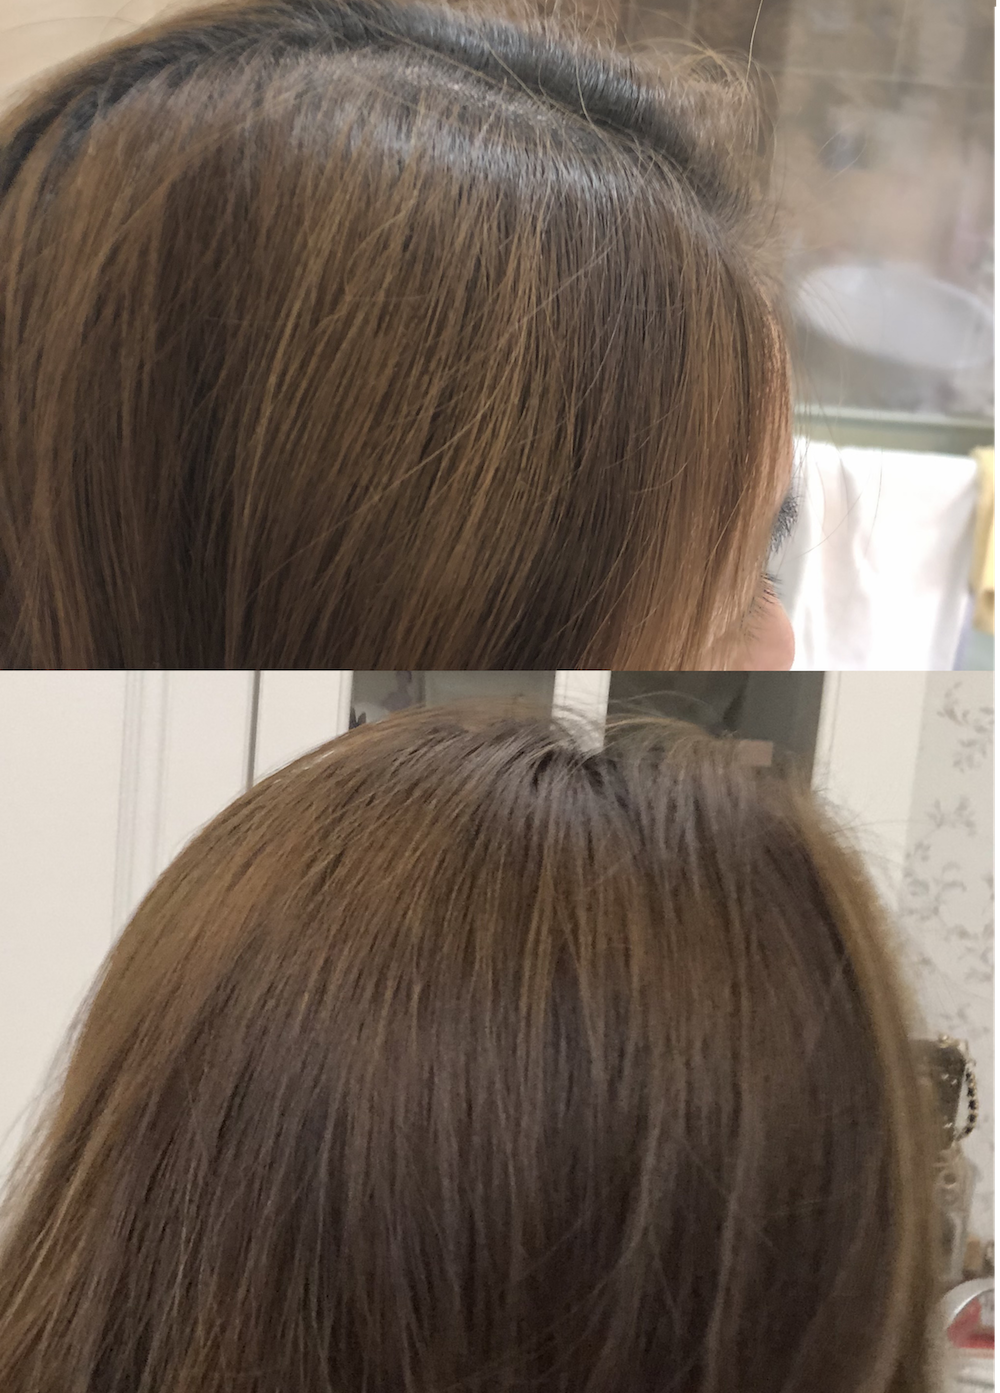 Melvita 護髮油 頭皮 精華油 iTRIAL 美評 護髮 護色 滋養頭皮